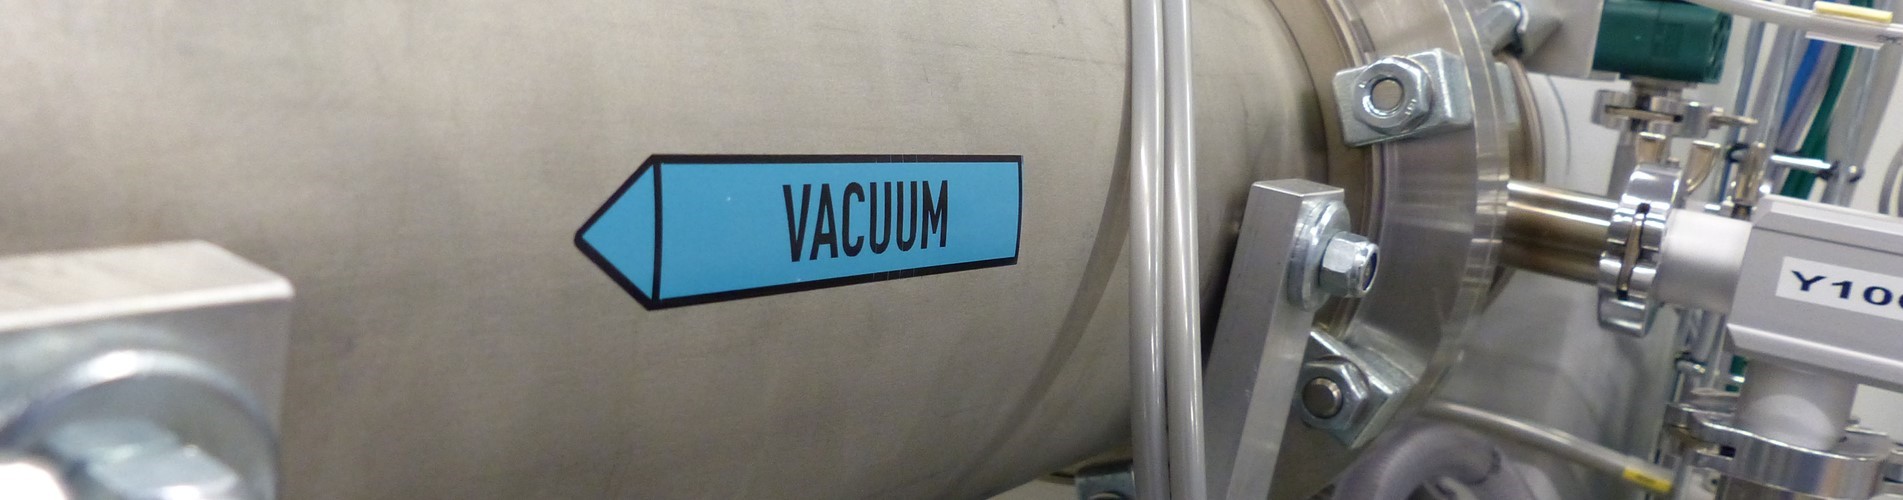 Vacuum chamber vakuumkammare